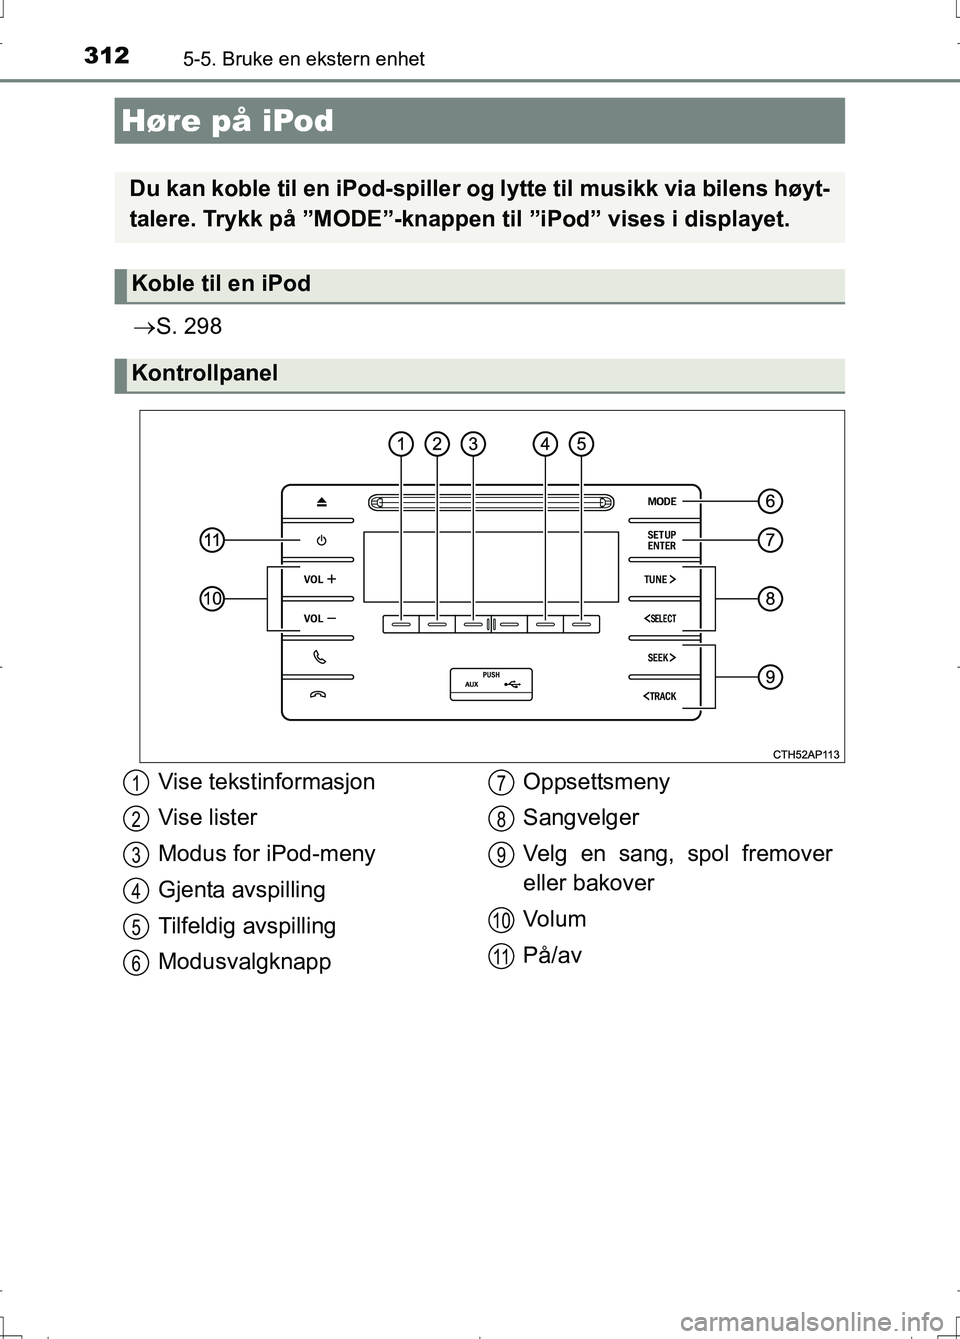 TOYOTA AURIS 2016  Instruksjoner for bruk (in Norwegian) 312
OM12J31NO
5-5. Bruke en ekstern enhet
S. 298
Høre på iPod
Du kan koble til en iPod-spiller og lytte til musikk via bilens høyt-
talere. Trykk på ”MODE”-knappen  til ”iPod” vises i d